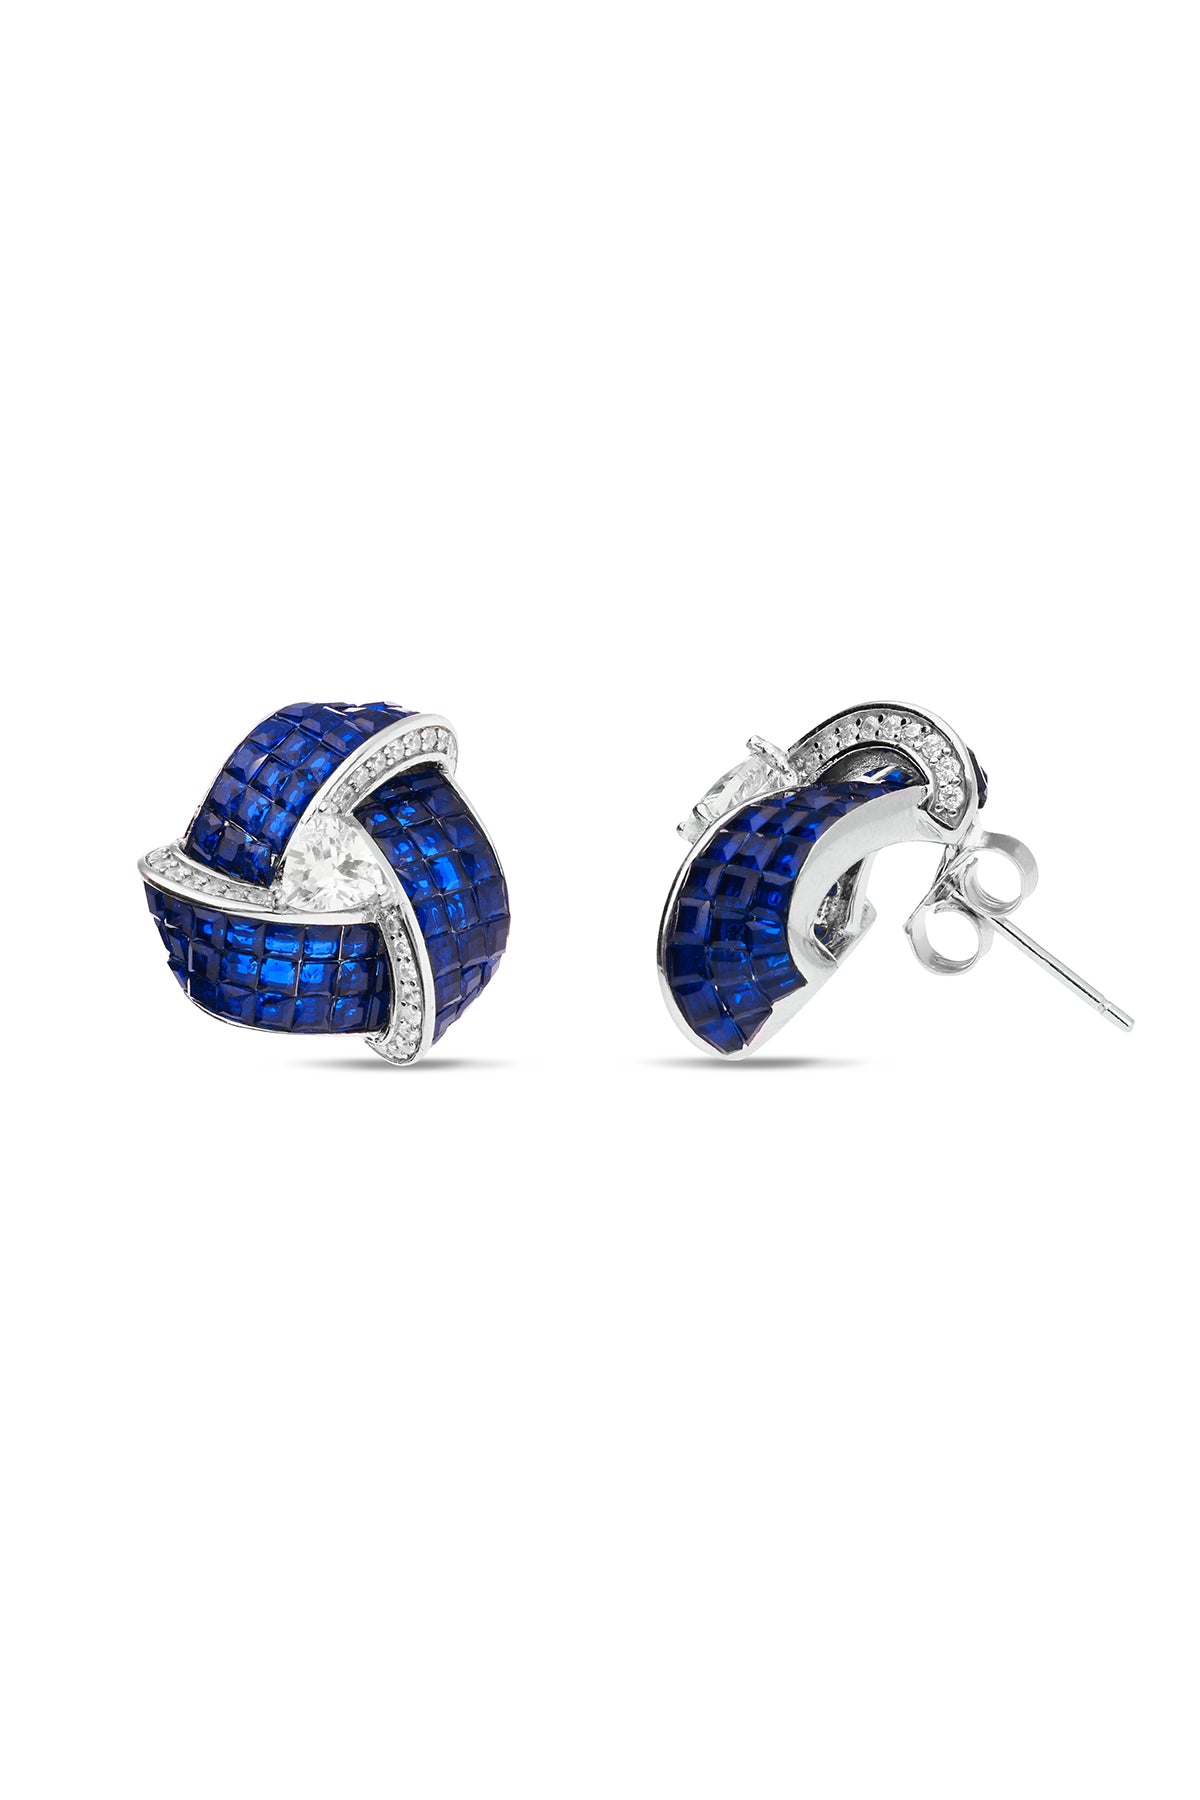 Enchanted Blue Sapphire Triad Blossom Stud Earrings